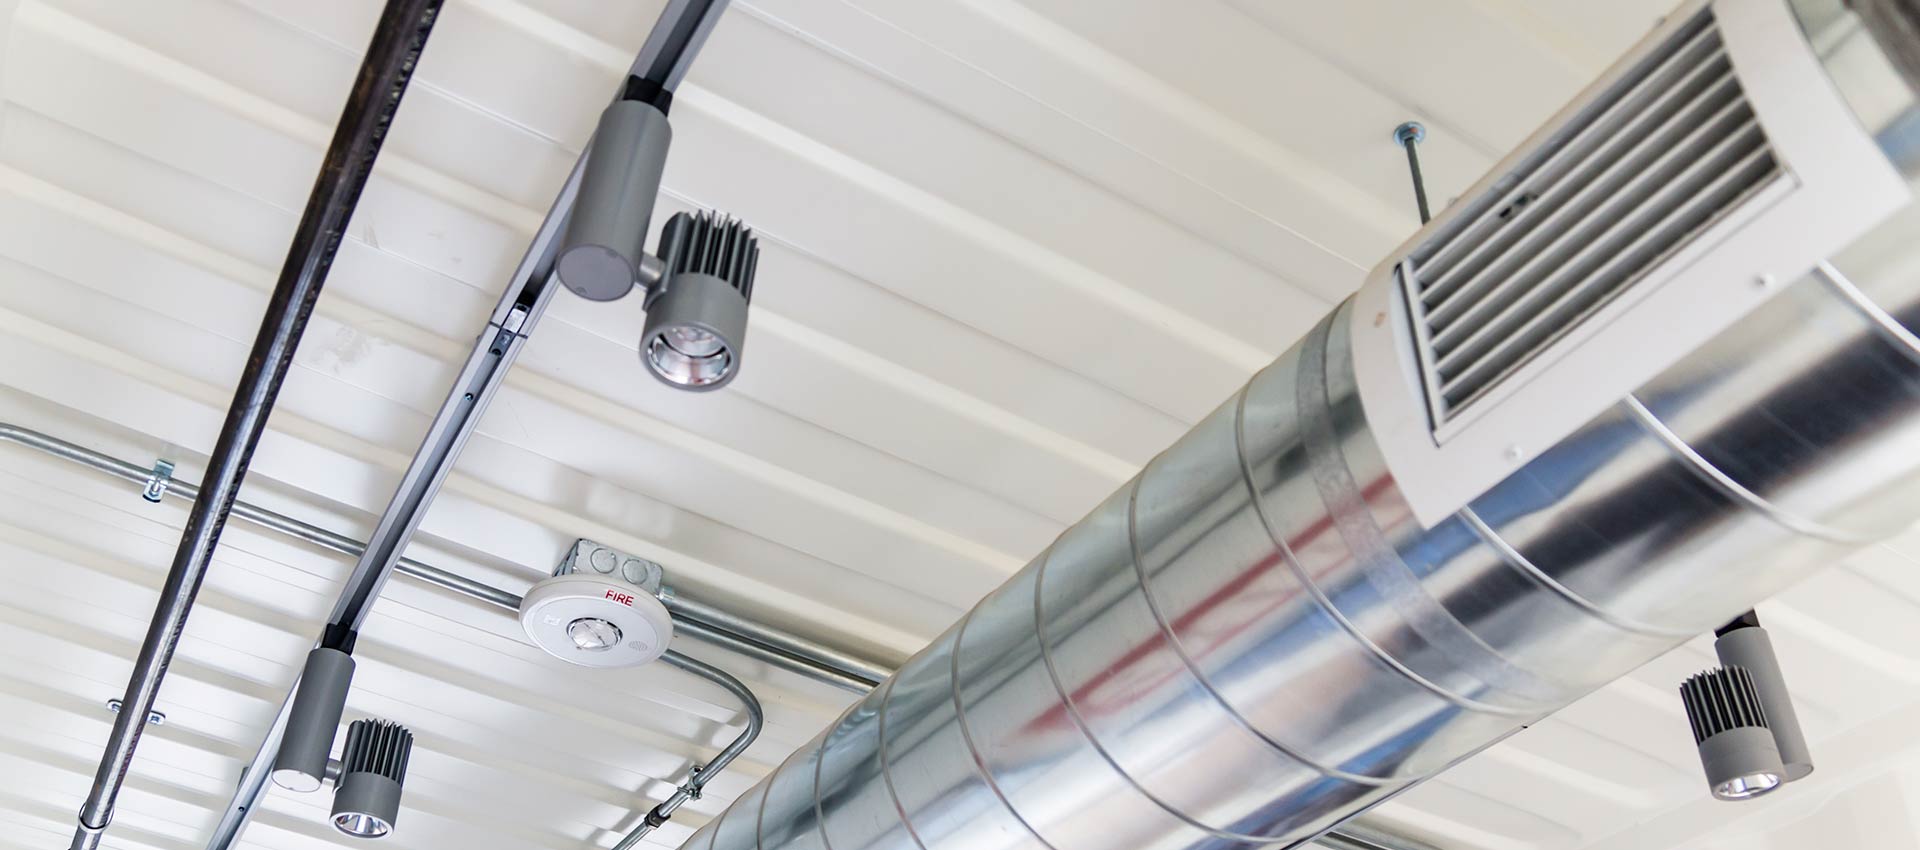 rensning af ventilationskanaler | rensning af ventilationsrør hos Vikke ApS